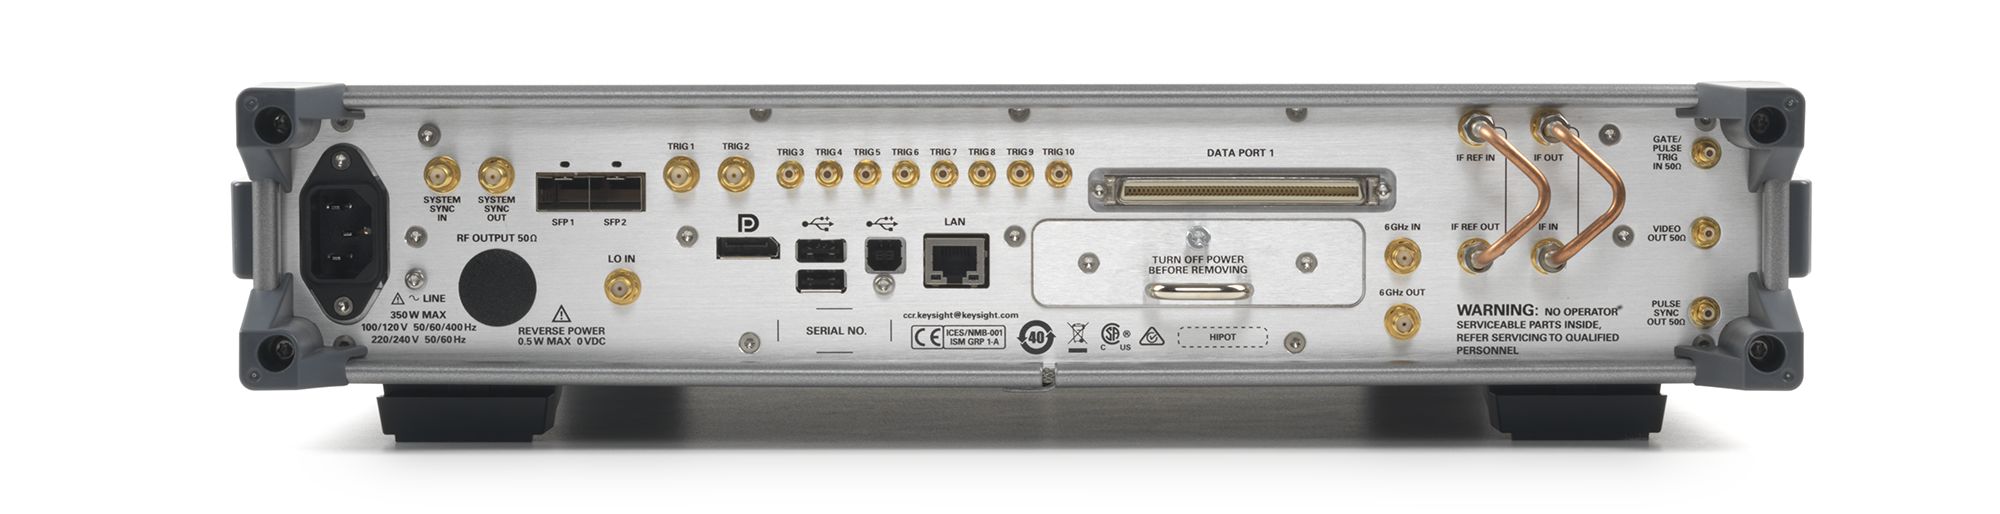 Keysight N5194A-520 50 MHz to 20 GHz